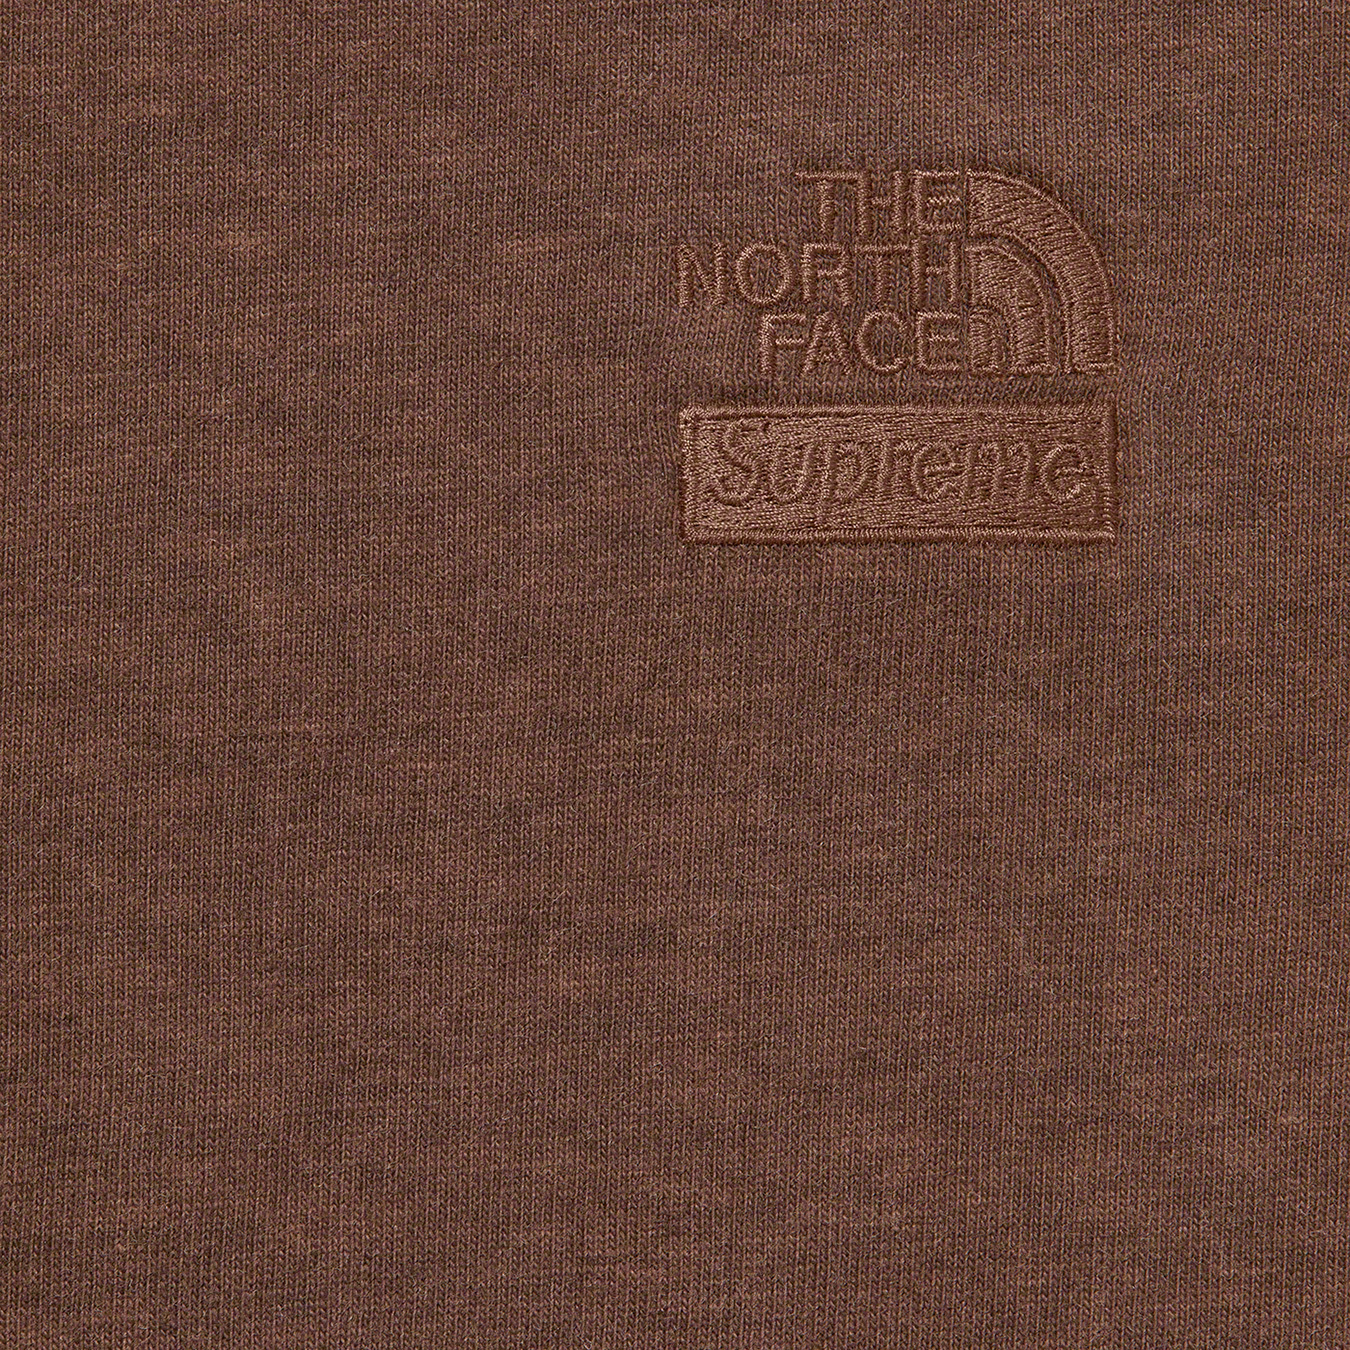 Supreme®/The North Face® Pigment Printed L/S Top Supreme 22fw